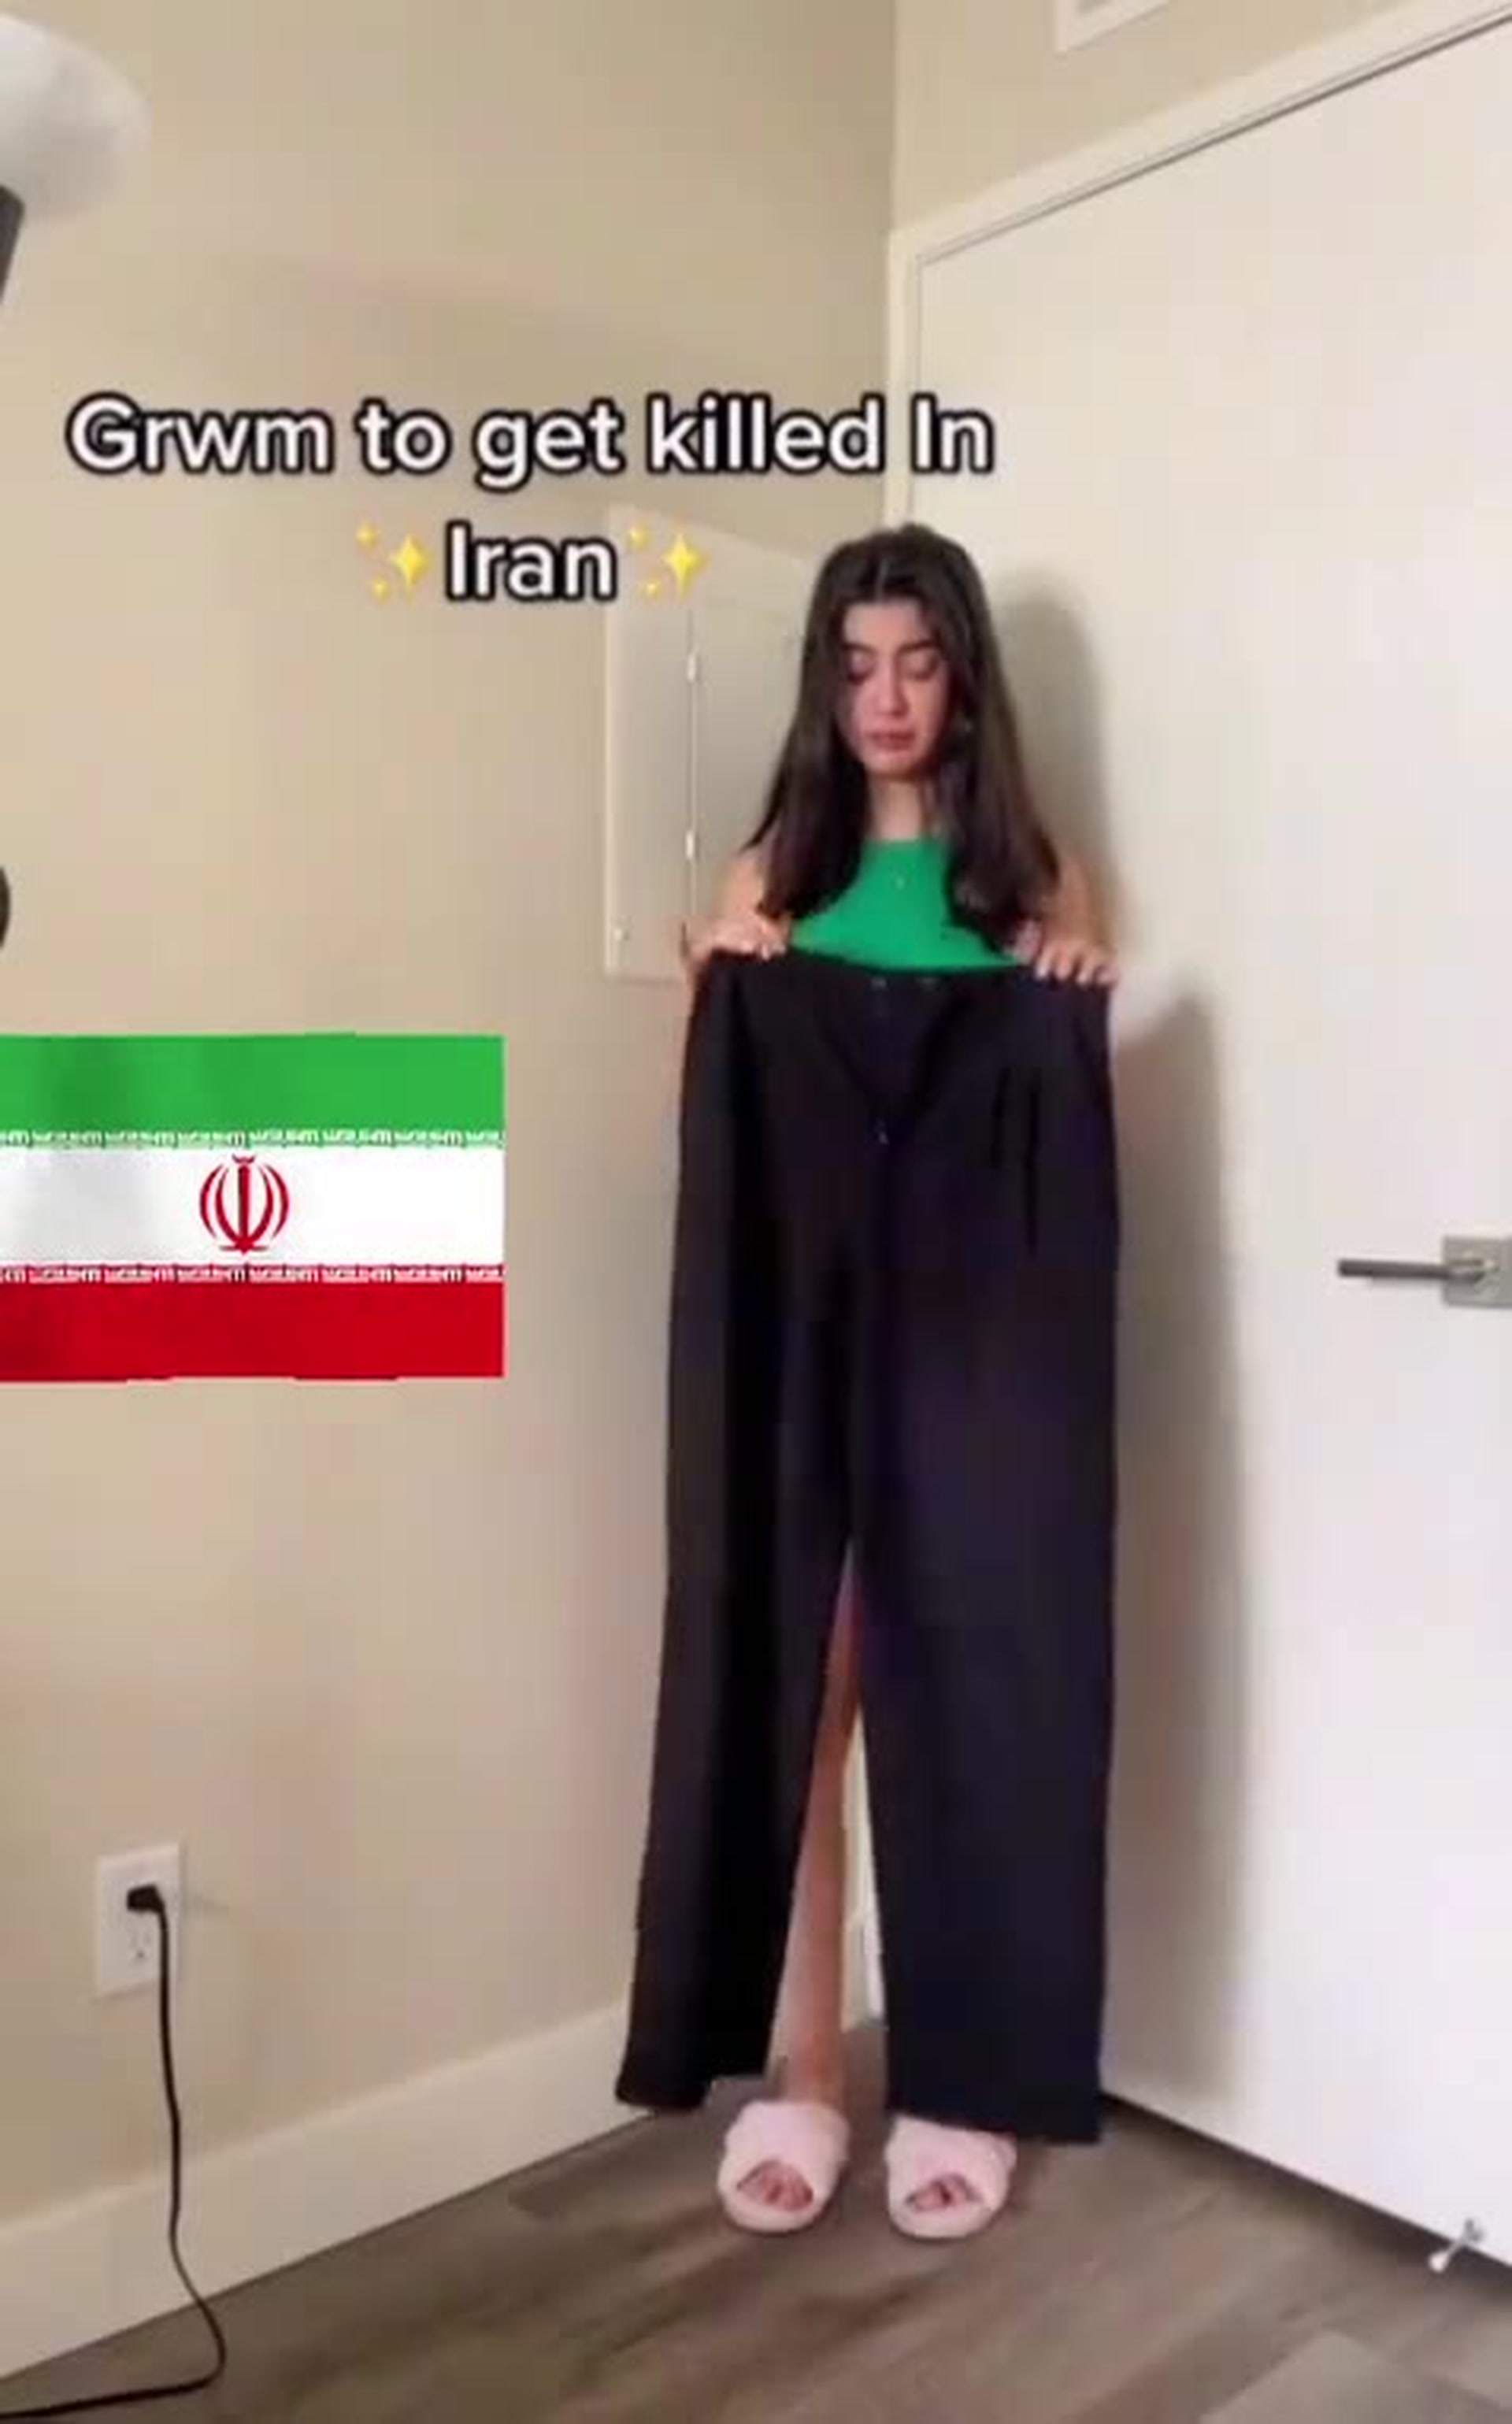 Les femmes iraniennes reprennent la tendance TikTok GRWM avant d'aller manifester